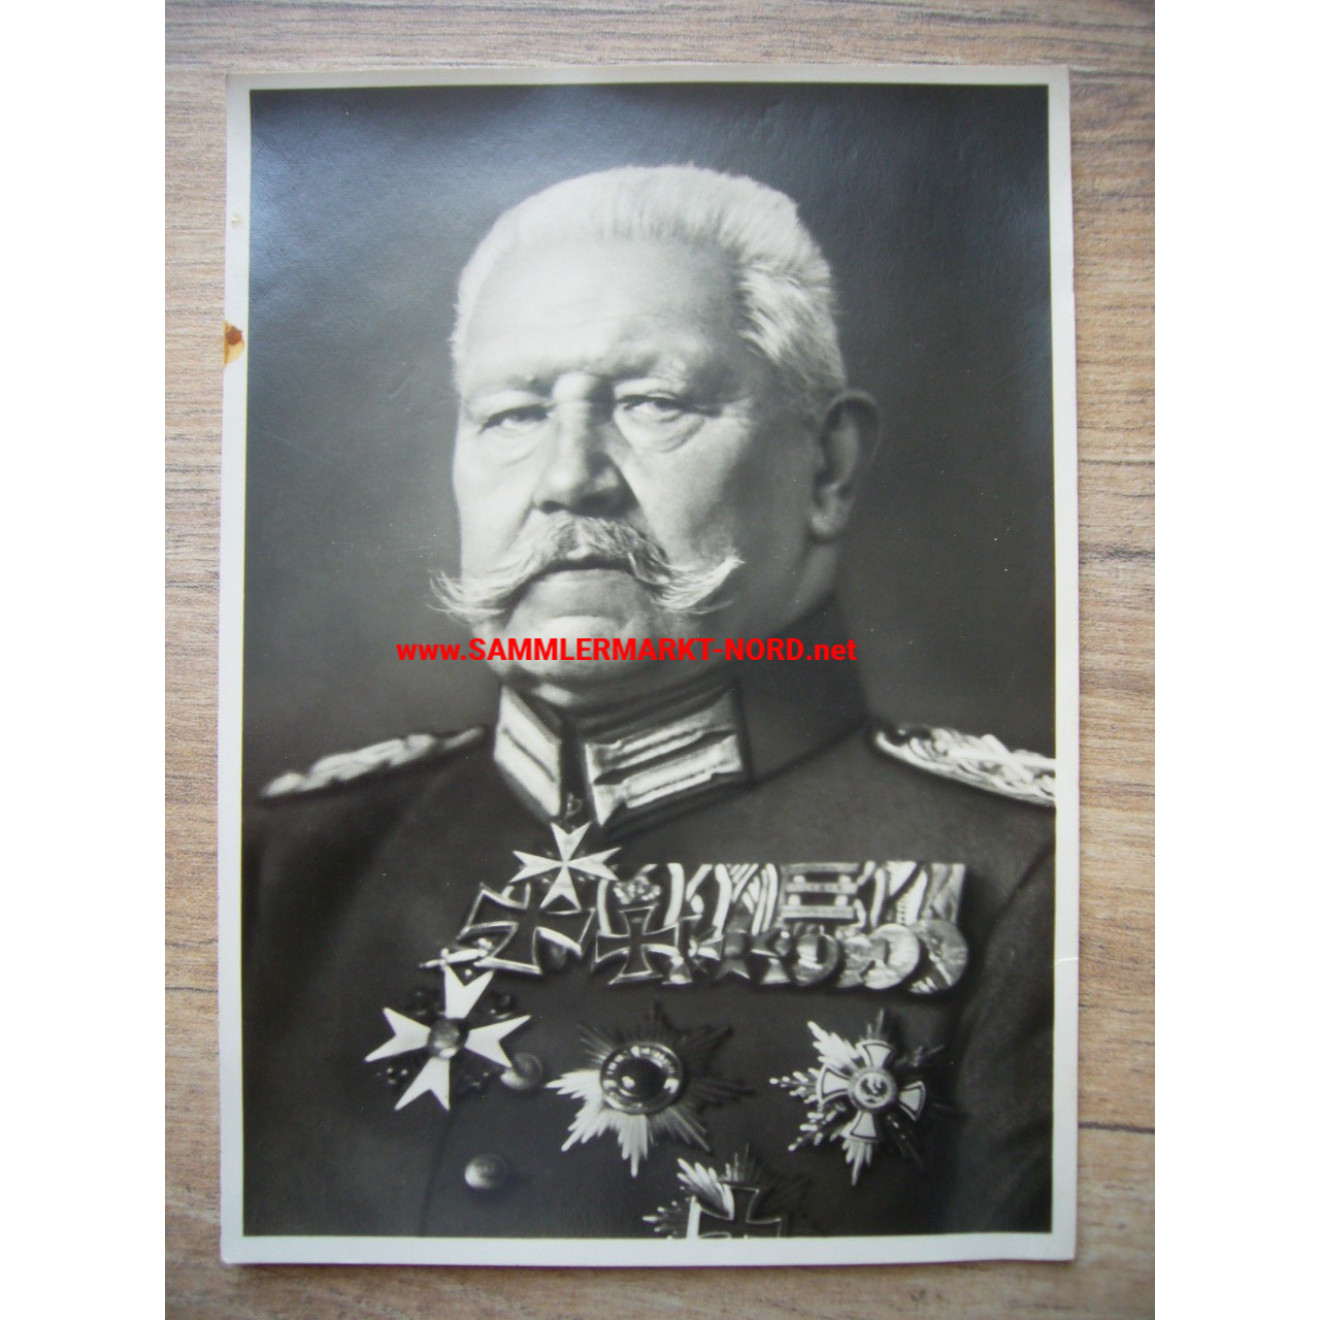 Field Marshal General Paul von Hindenburg - Postcard